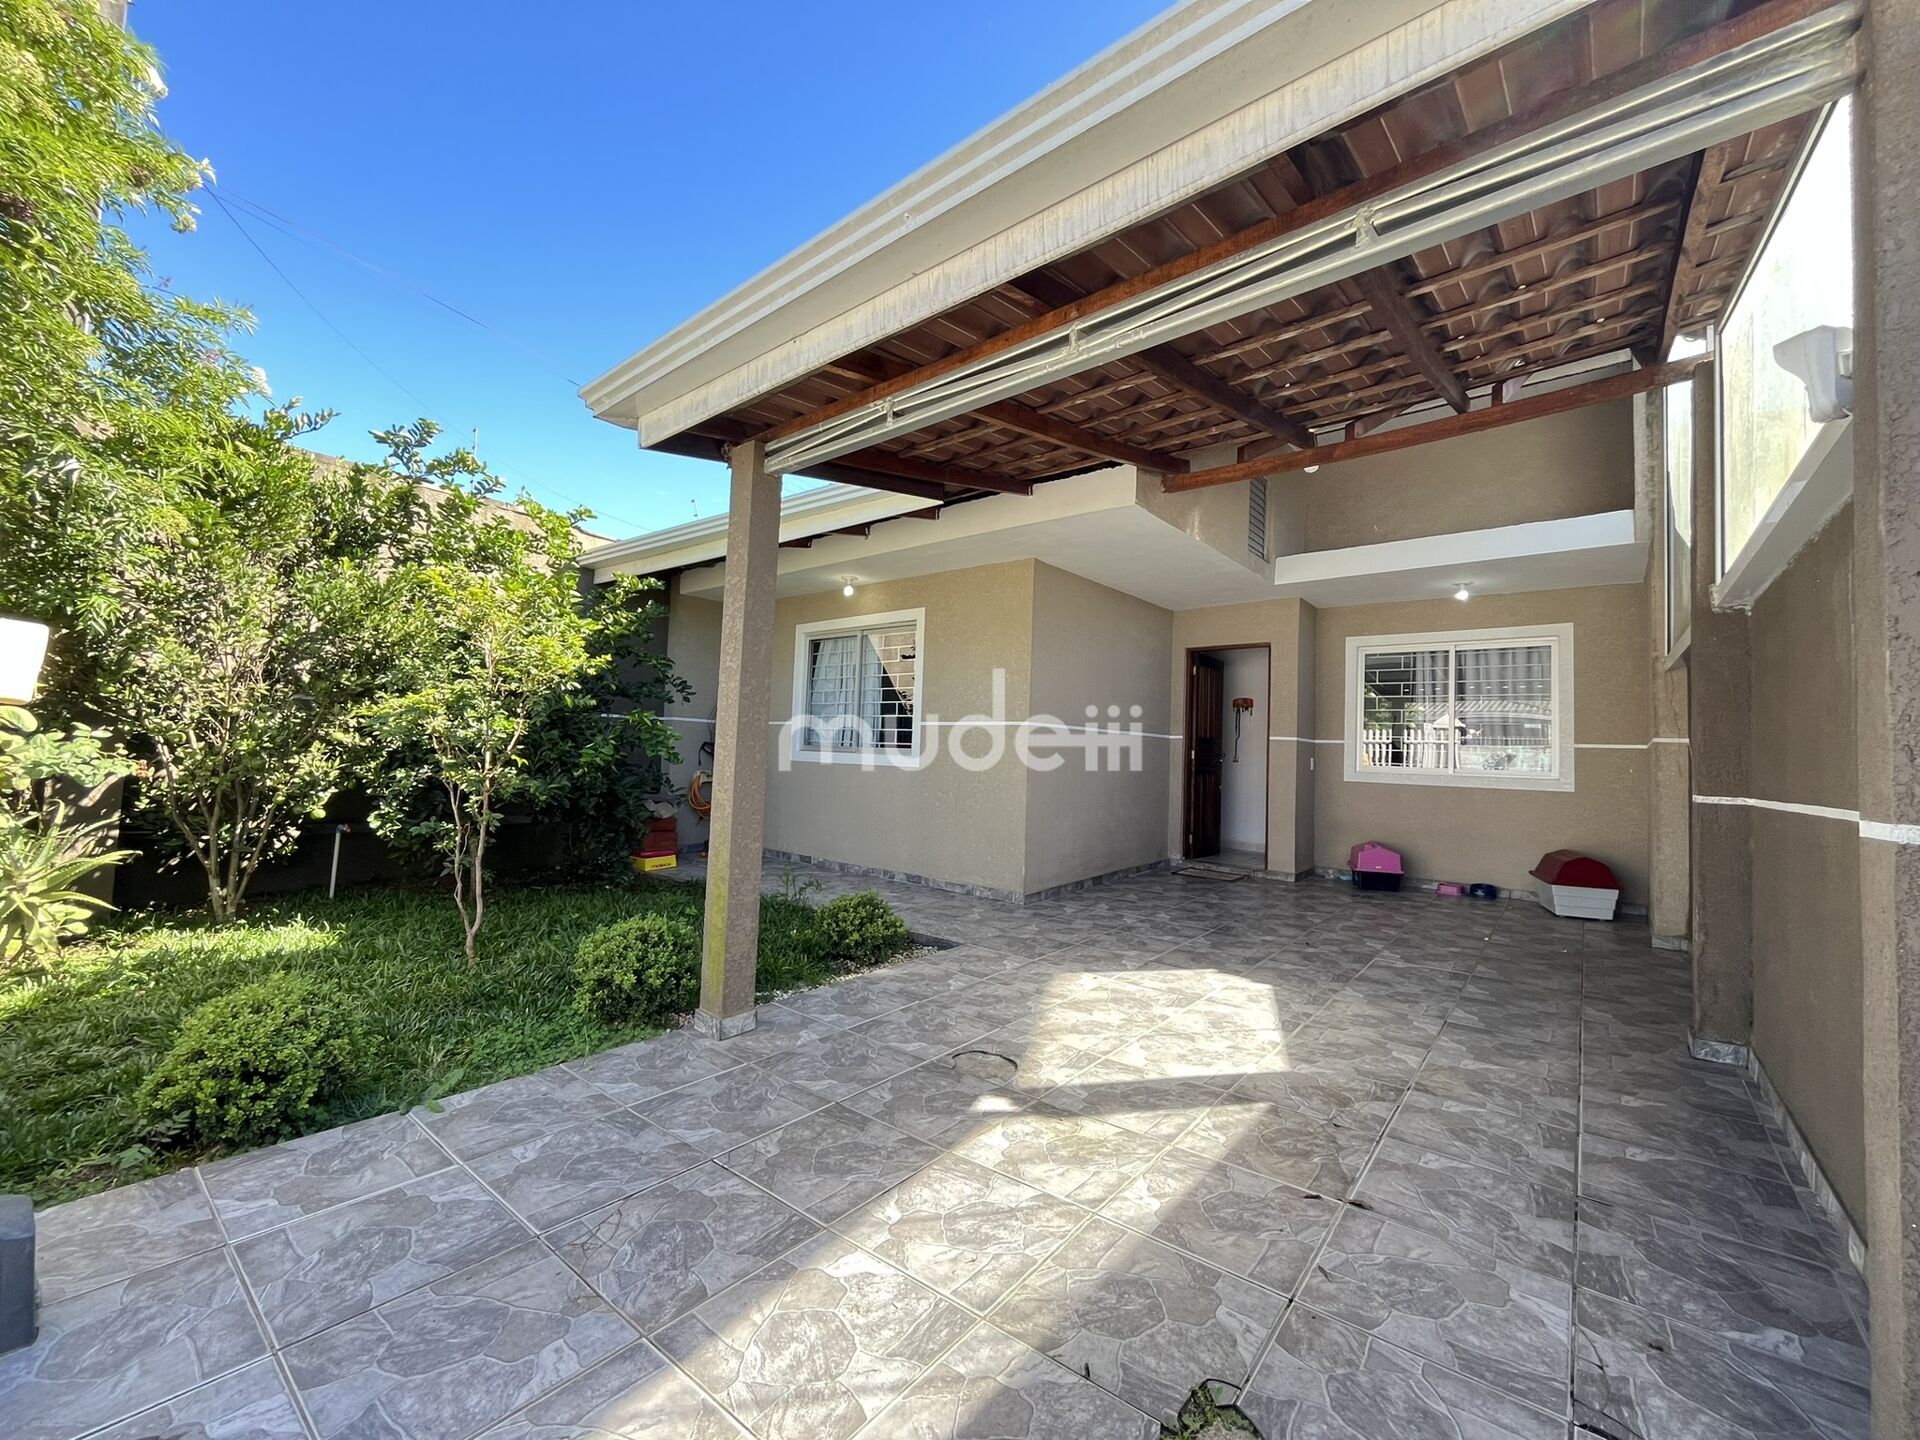 Casa à venda no bairro Quississana - São José dos Pinhais/PR